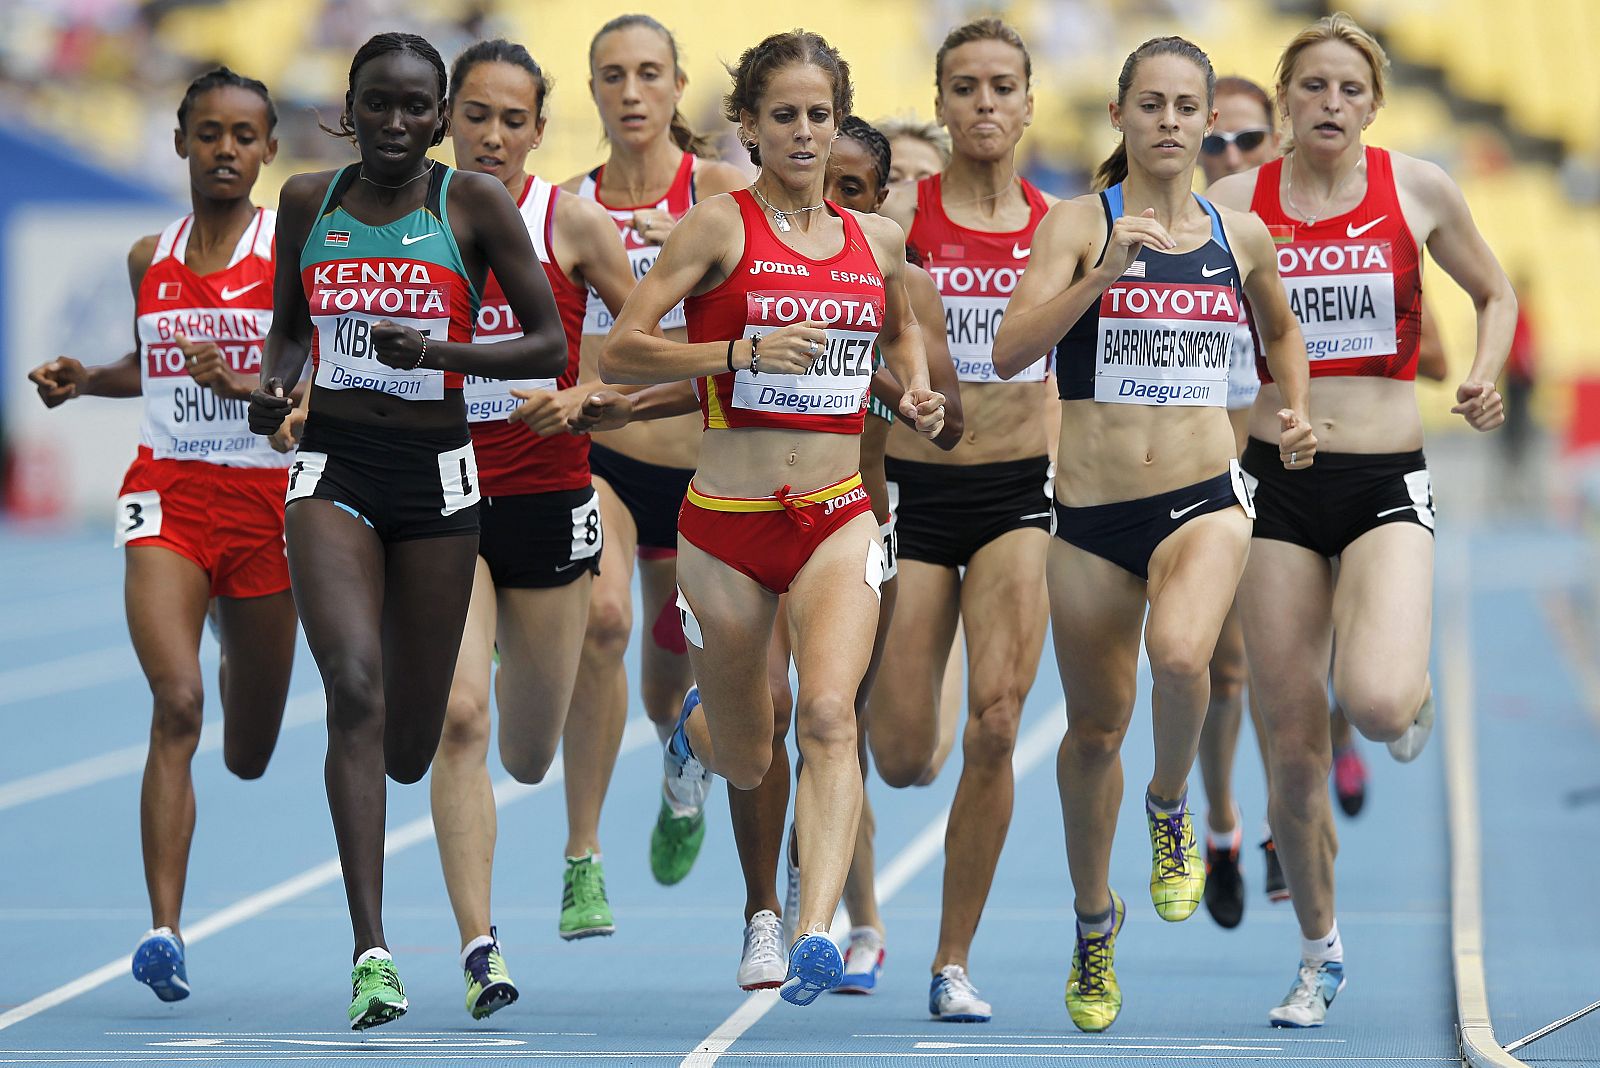 La española Natalia Rodríguez (centro) compite en la prueba de 1500m de mujeres en el Mundial de Atletismo de Daegu.